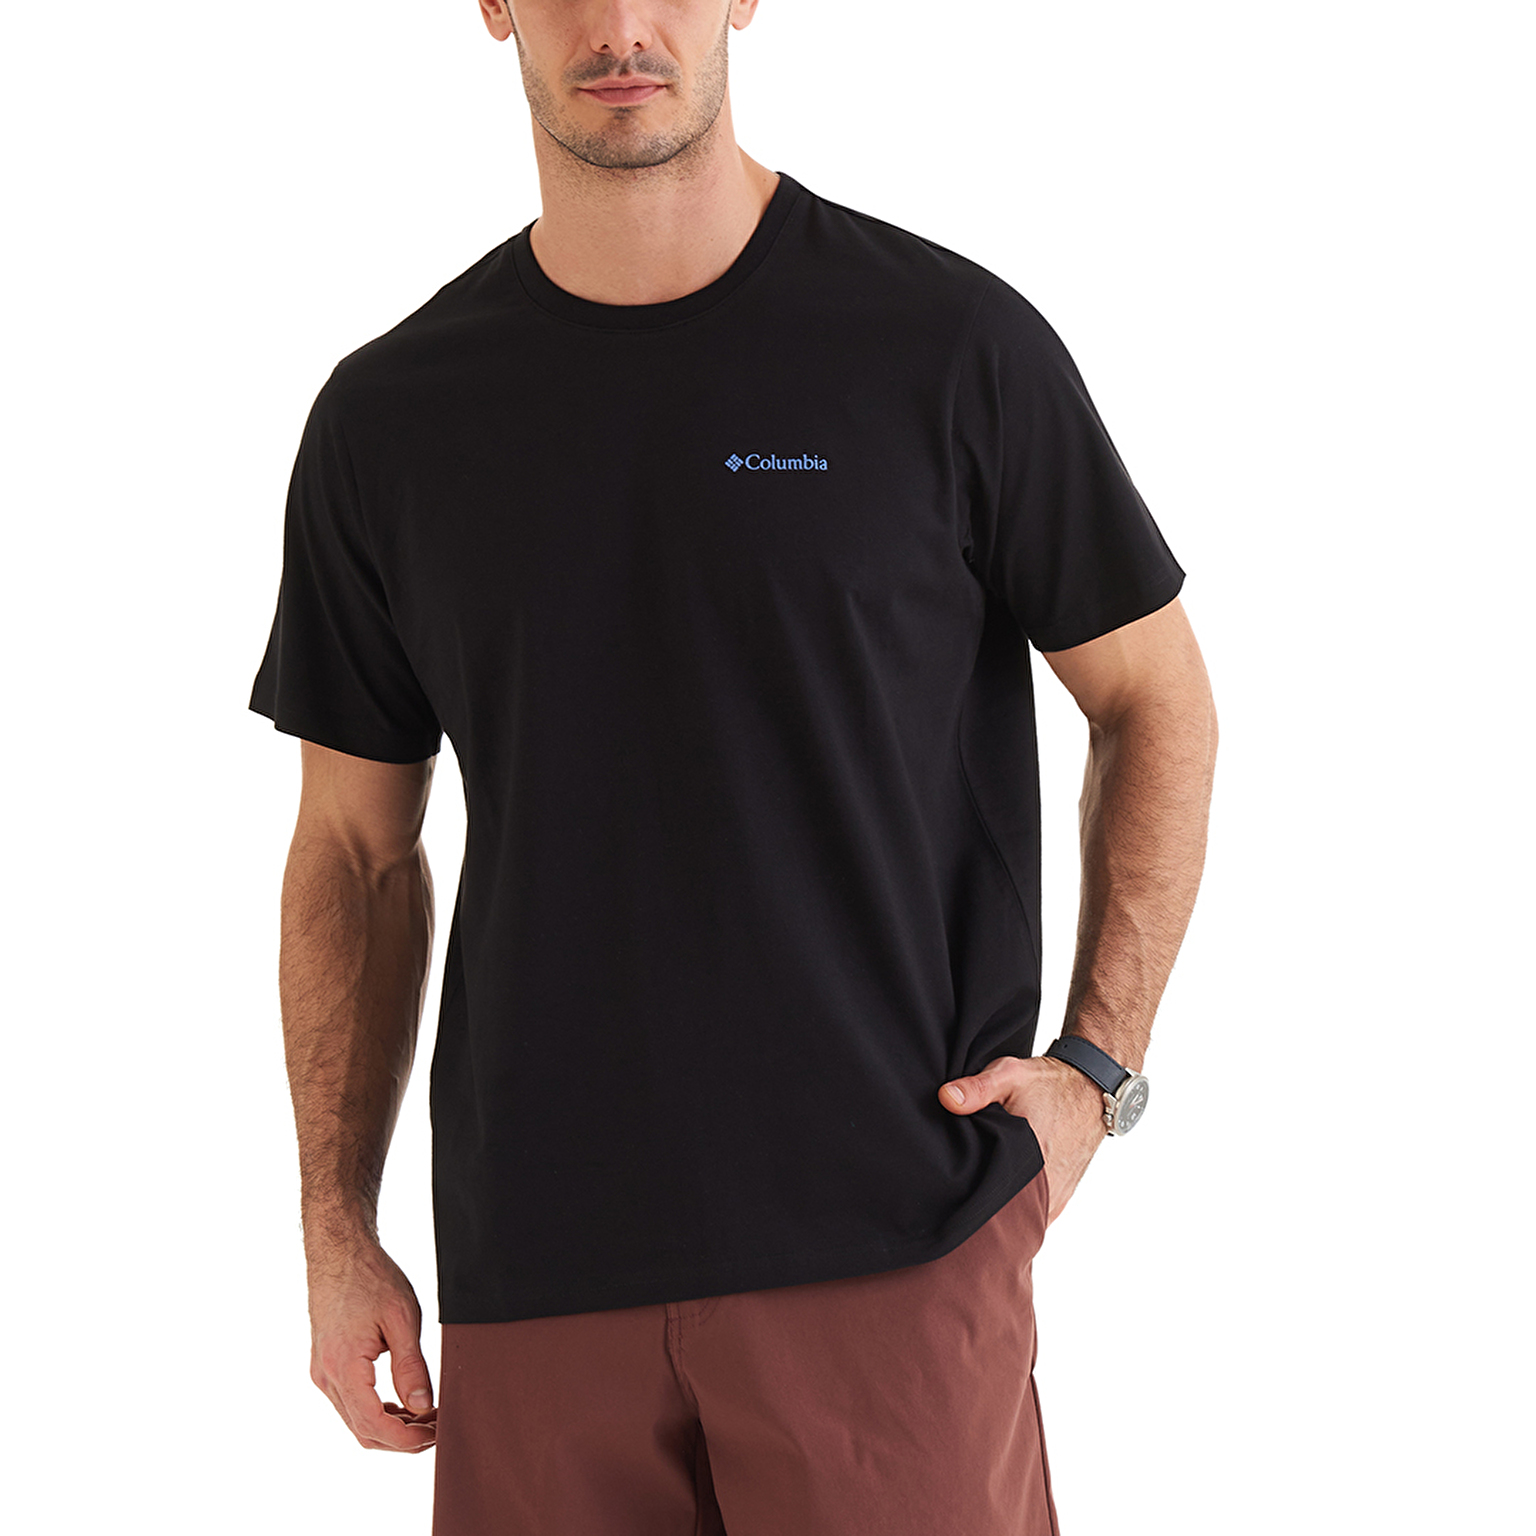 CSC Bearly Tribe Erkek Comfort Kısa Kollu T-shirt